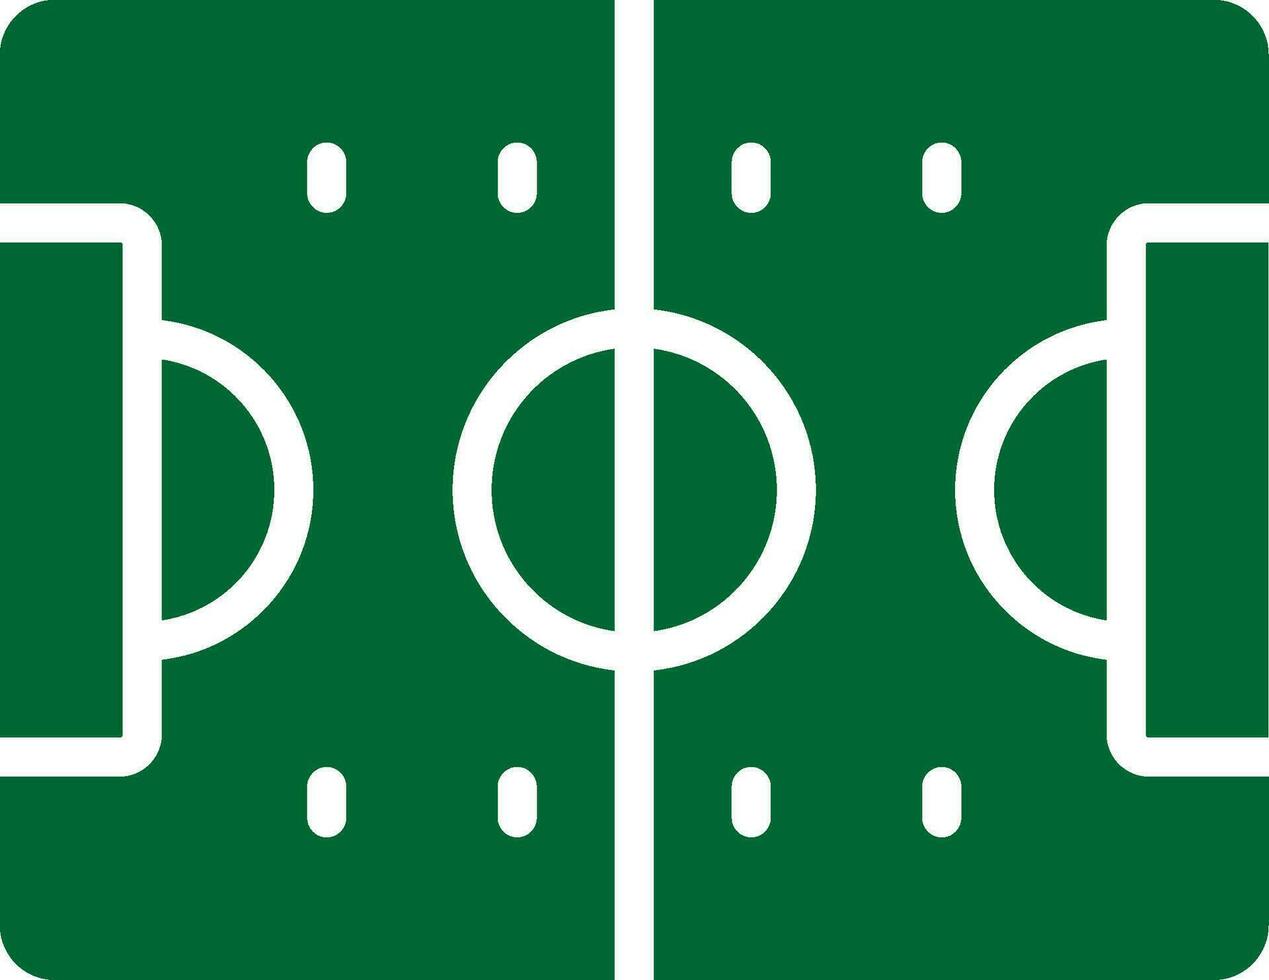 Football Game Creative Icon Design vector